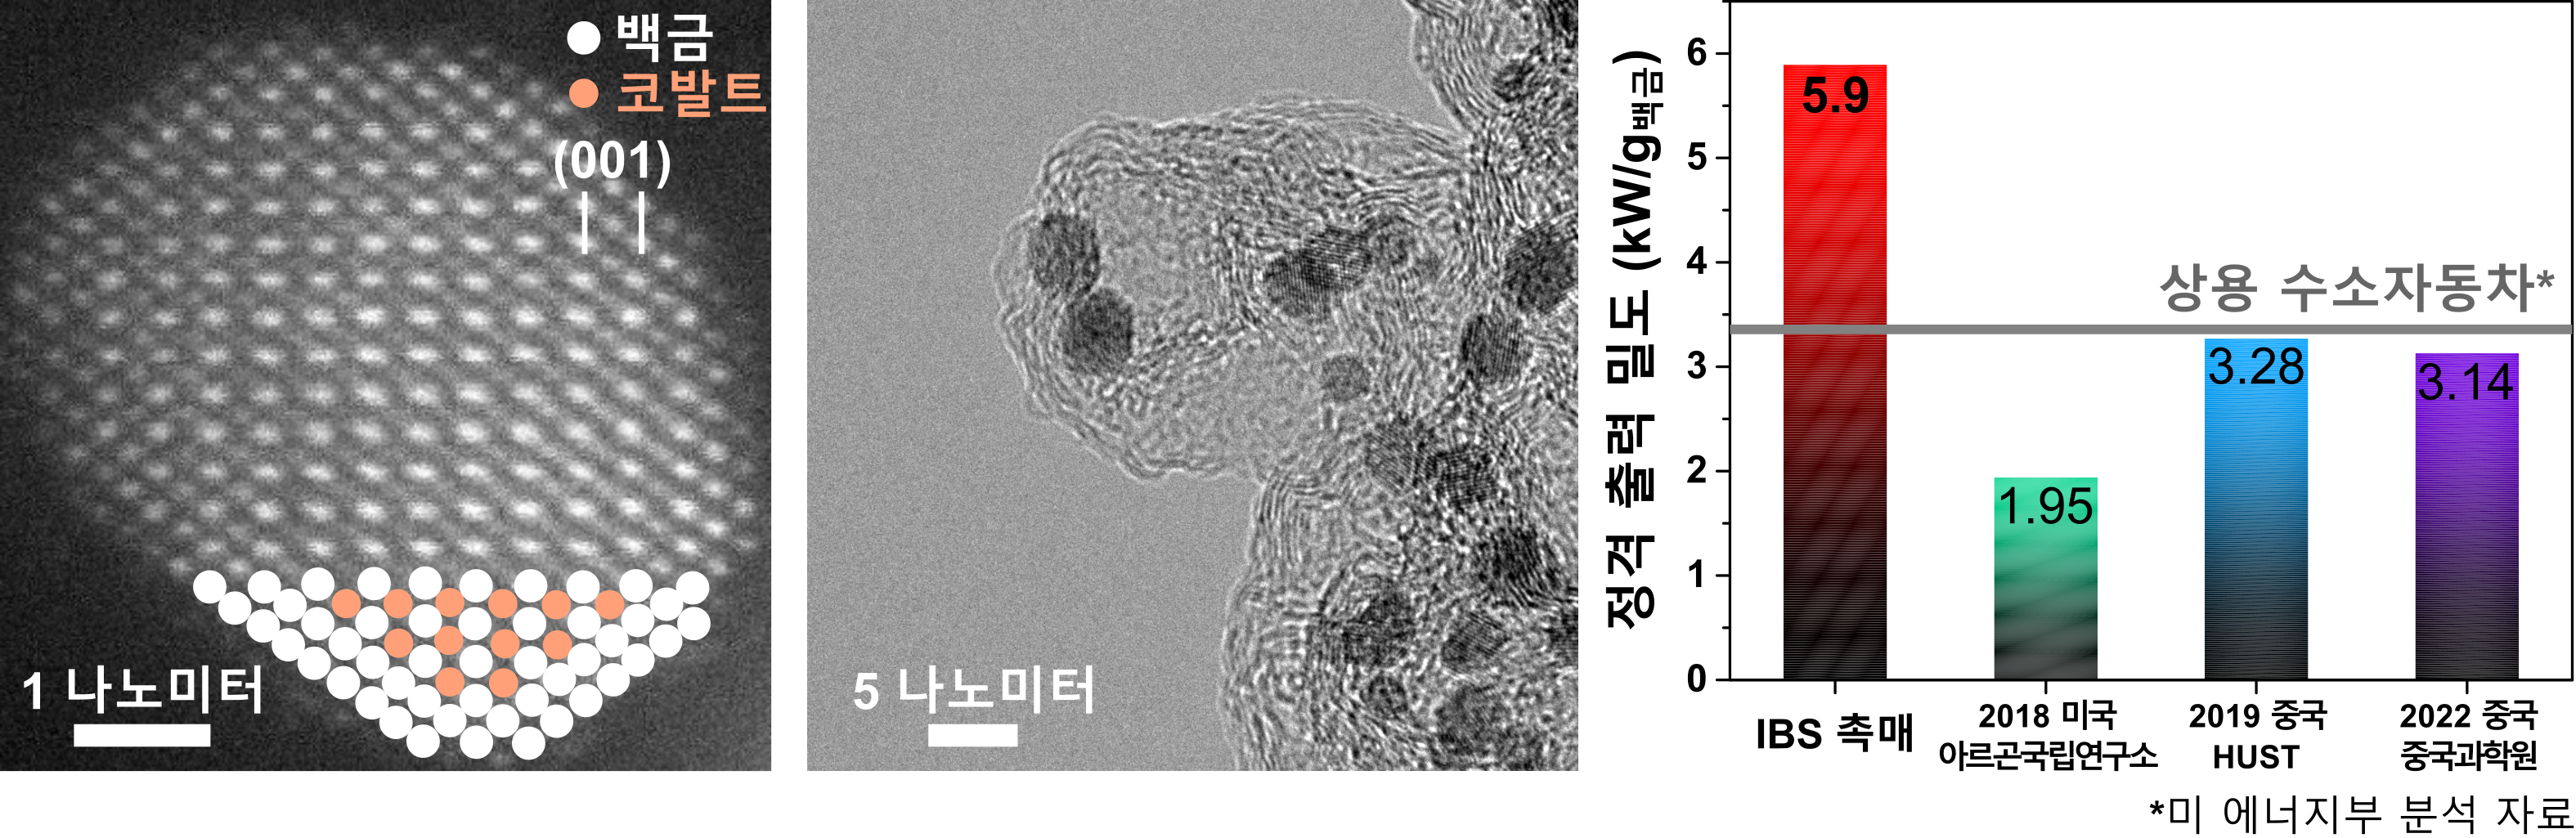 그림 1. 개발된 백금-코발트 나노촉매의 현미경 이미지 및 연료전지 발전 성능